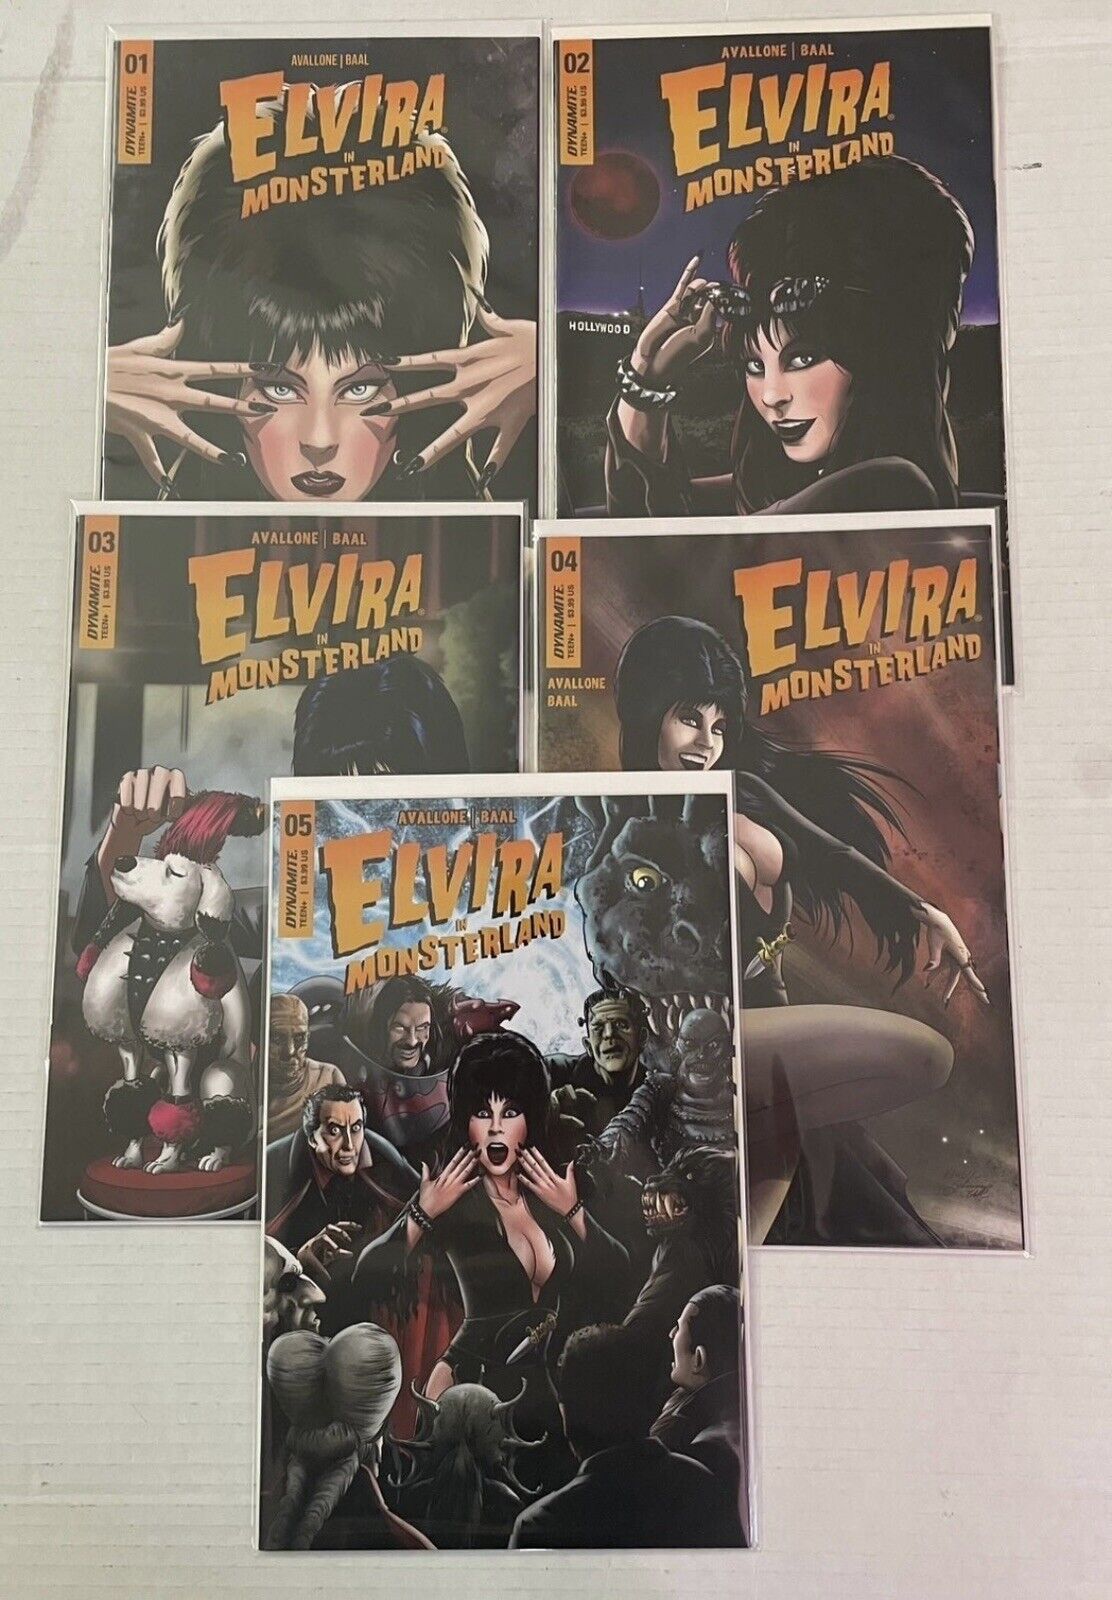 Elvira in Monsterland #1-5 complete series Kewber Baal - all C variants